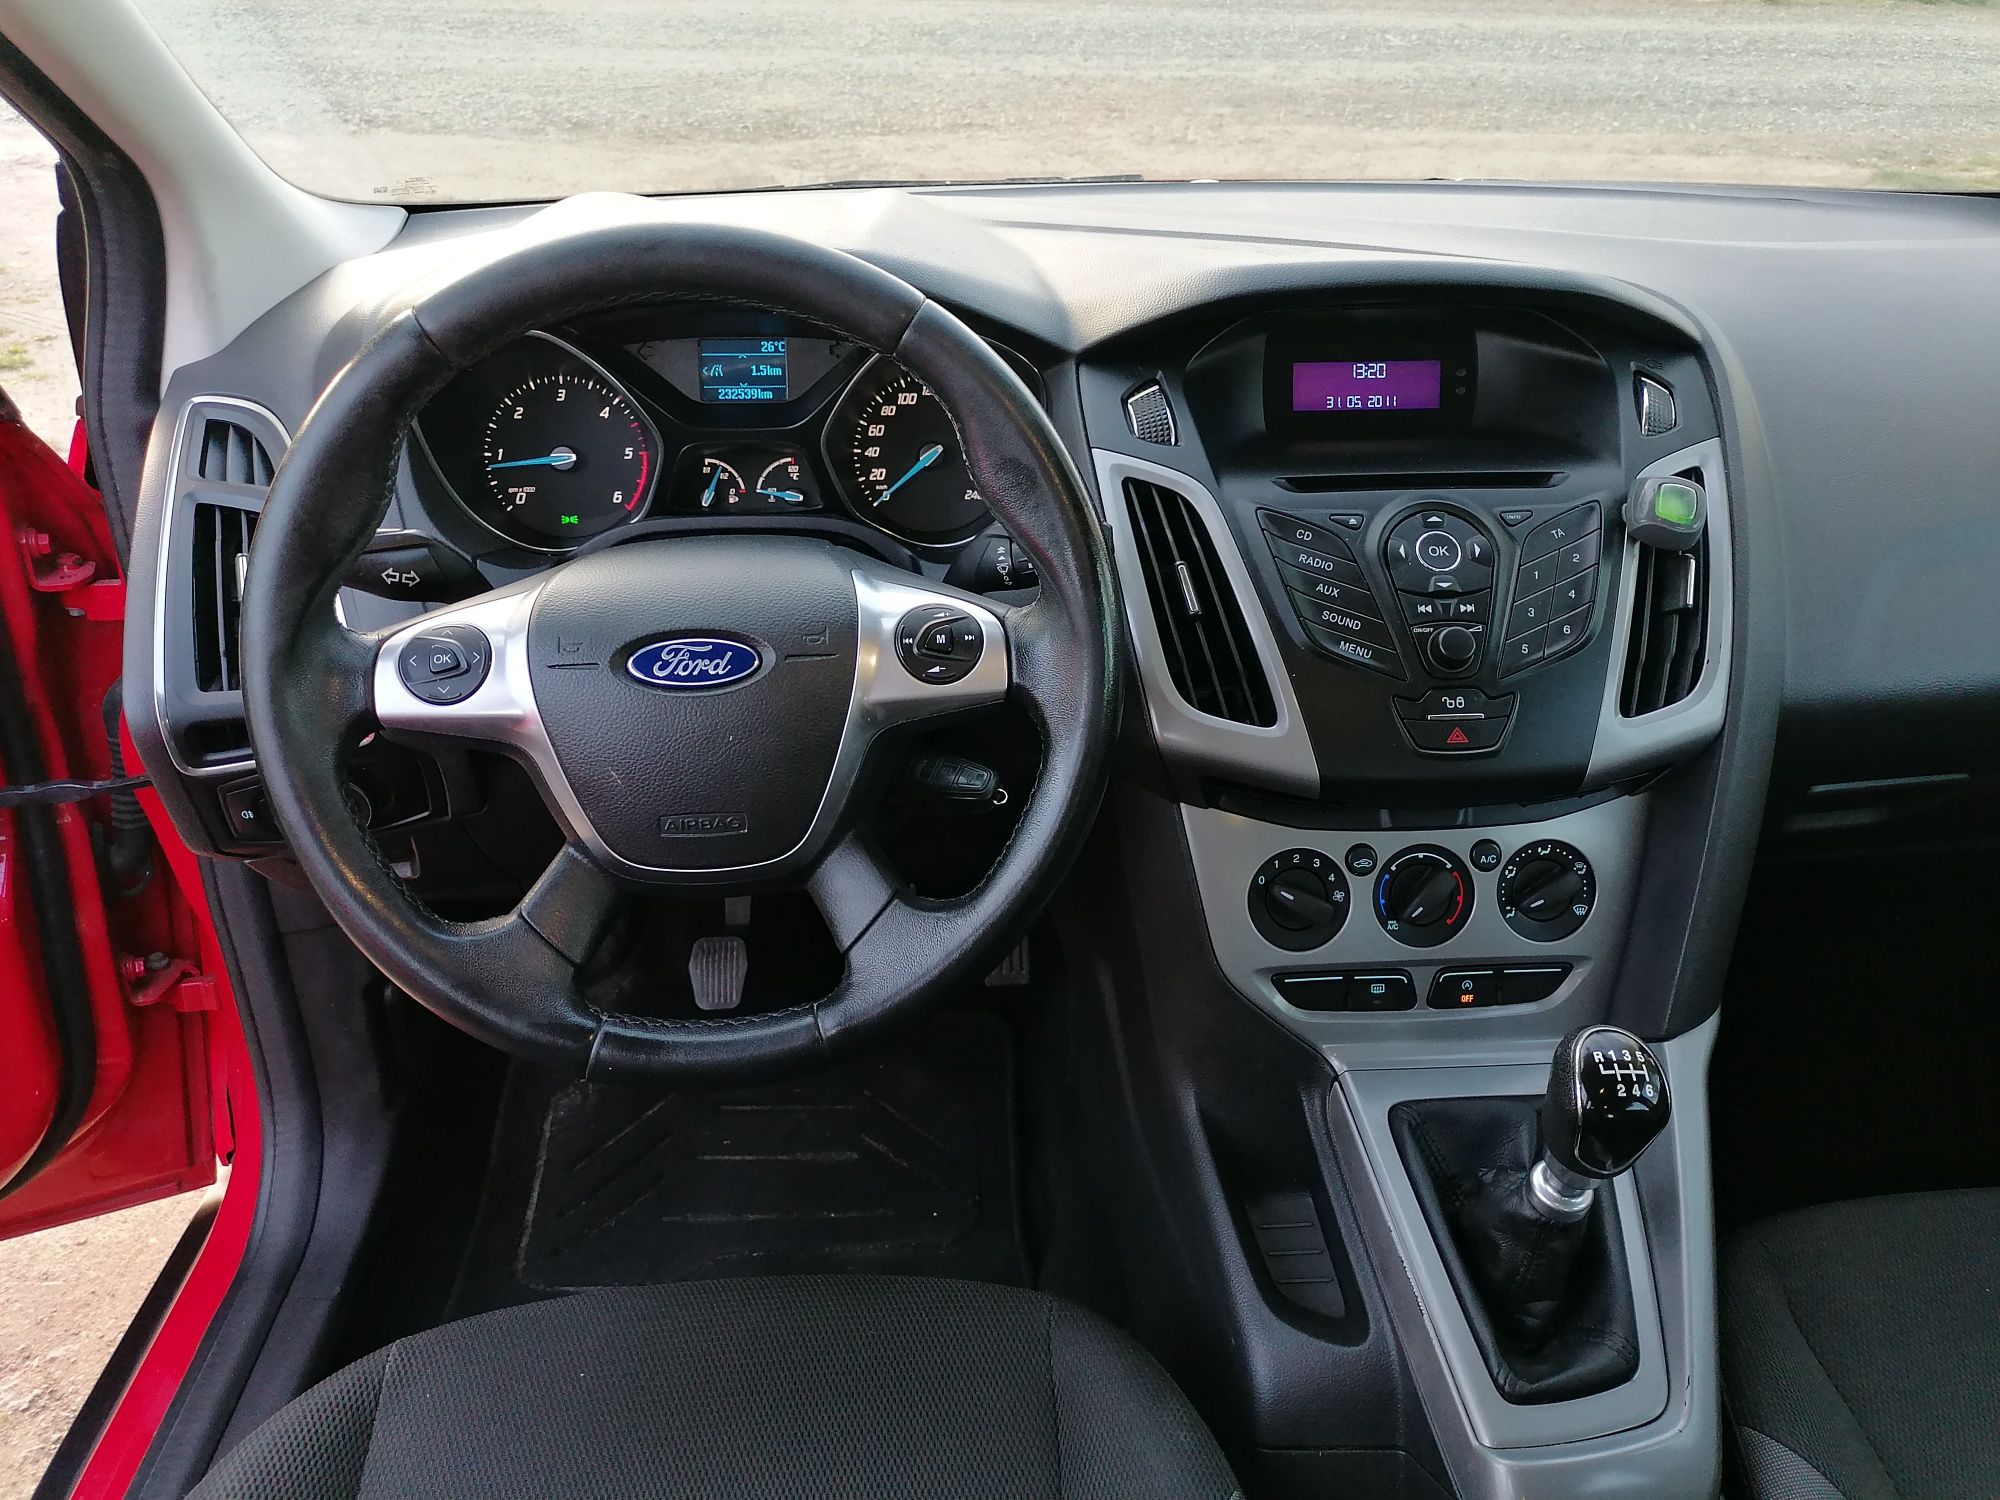 Ford focus 1,6 tdci an 2011.05